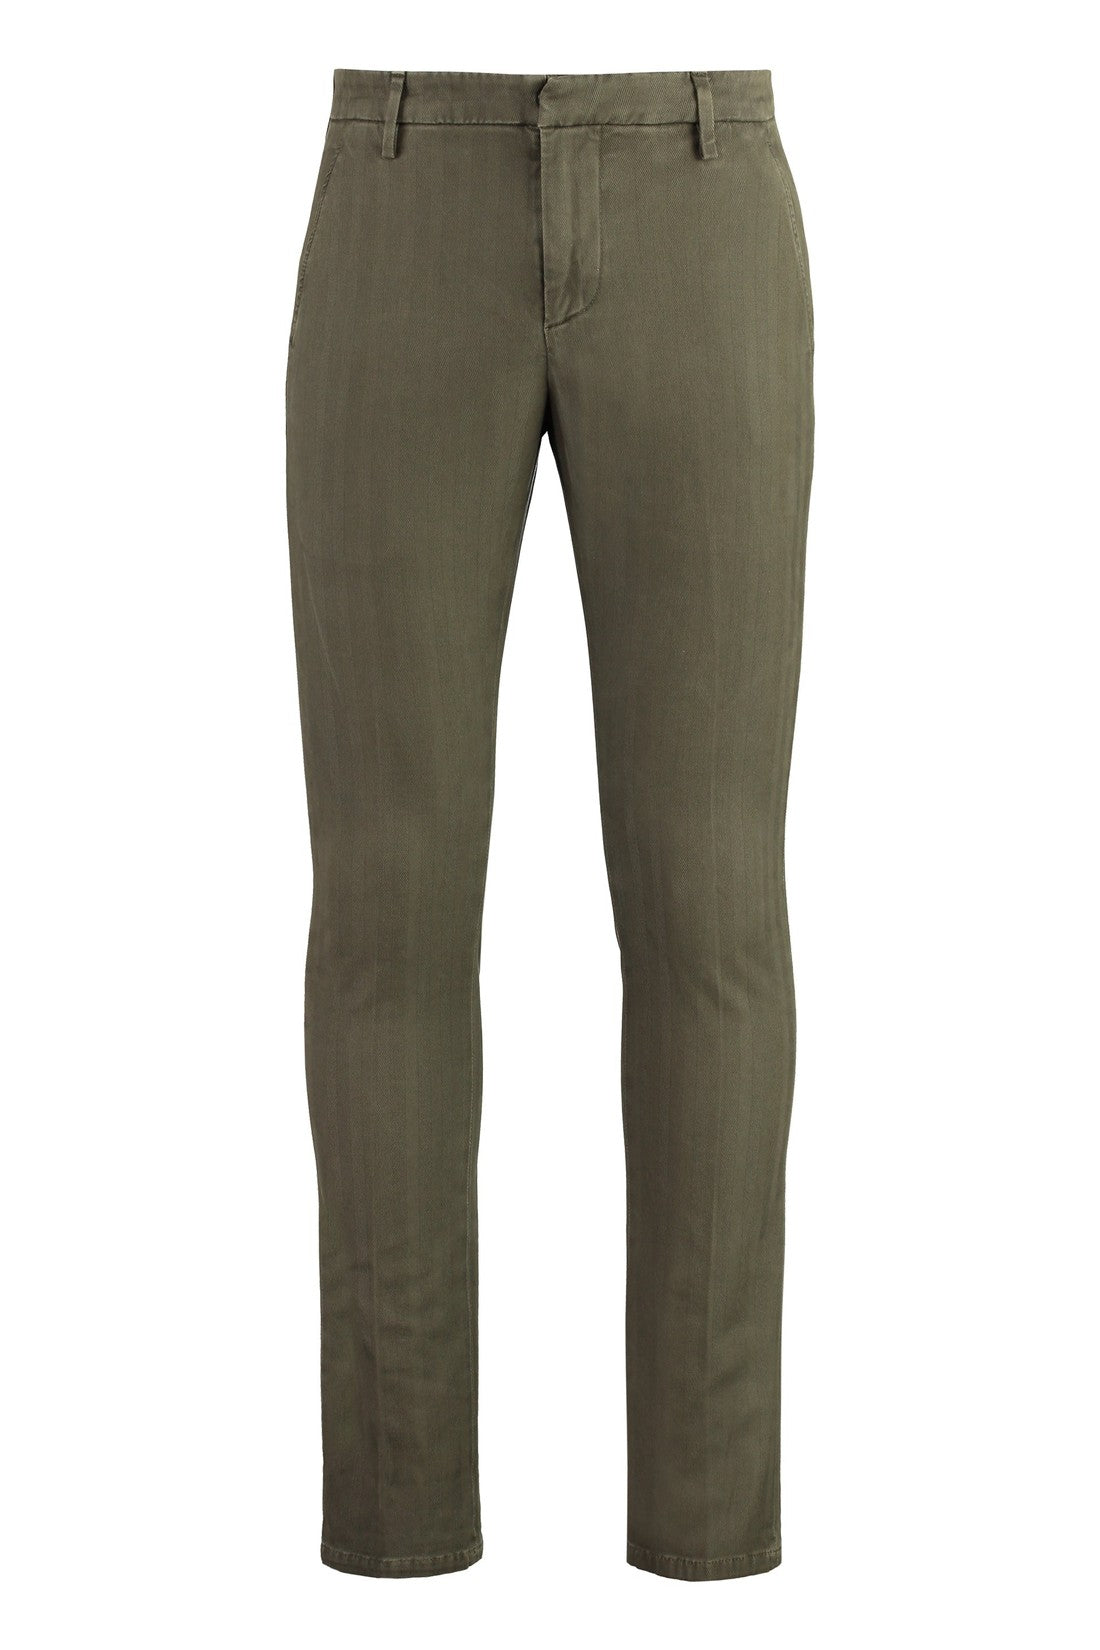 Dondup-OUTLET-SALE-Gaubert cotton blend trousers-ARCHIVIST